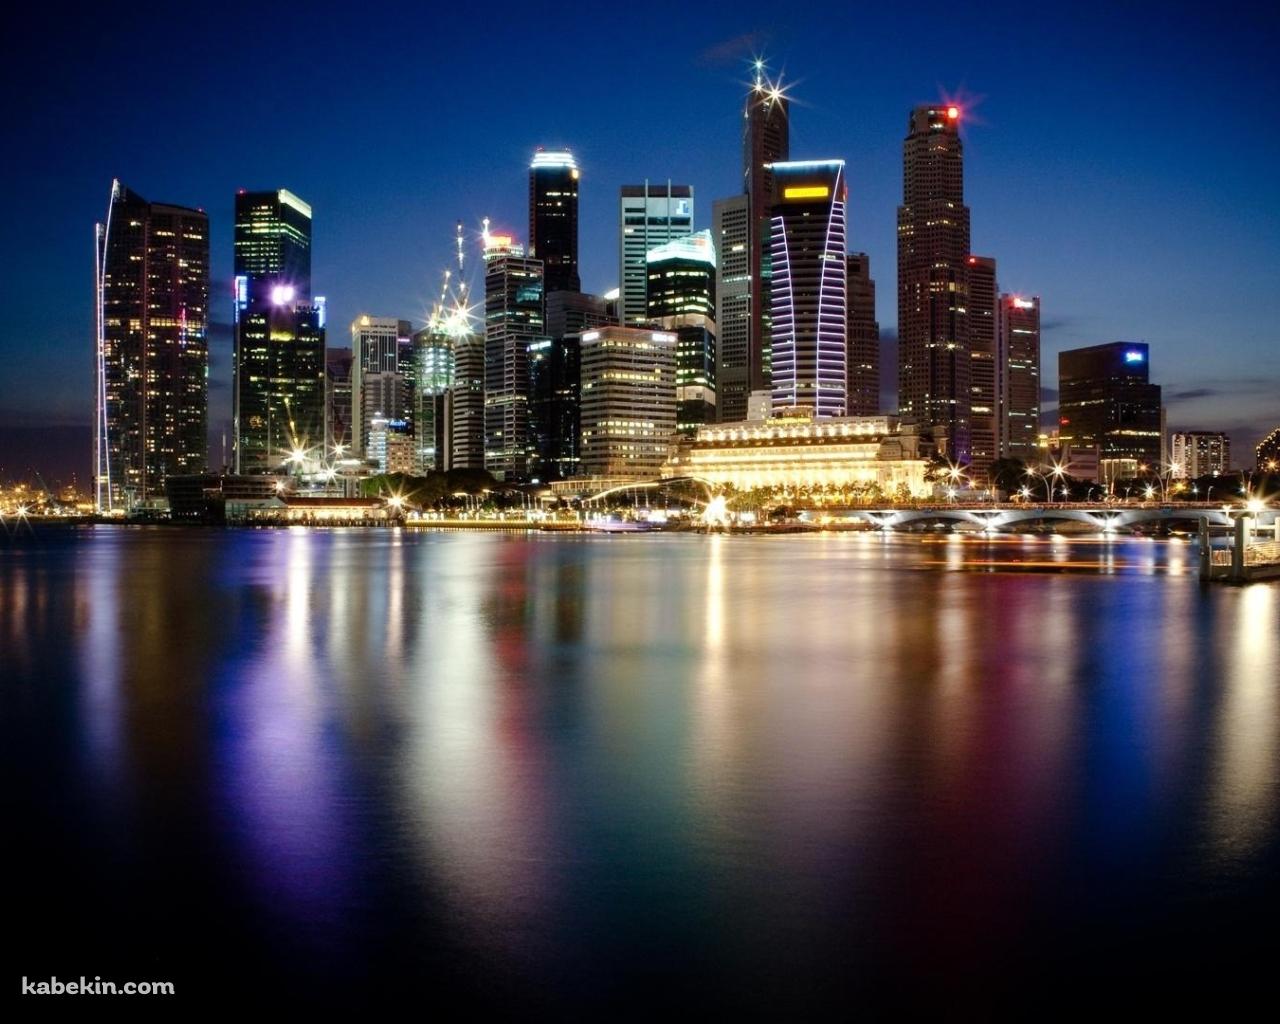 シンガポールの夜景の壁紙(1280px x 1024px) 高画質 PC・デスクトップ用